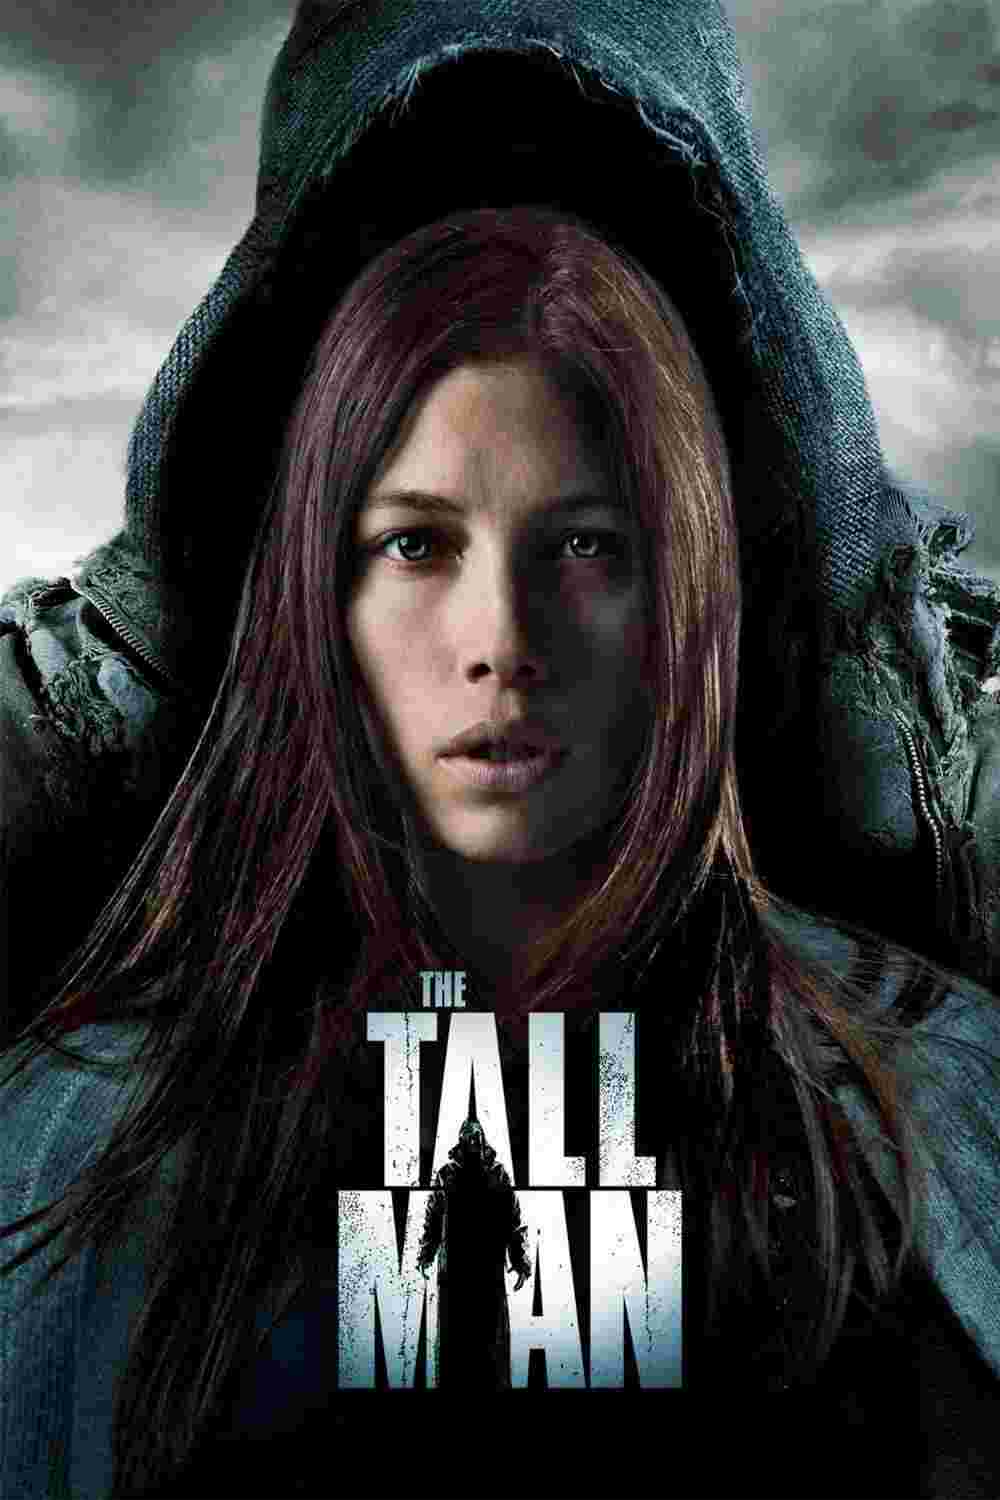 The Tall Man (2012) Jessica Biel